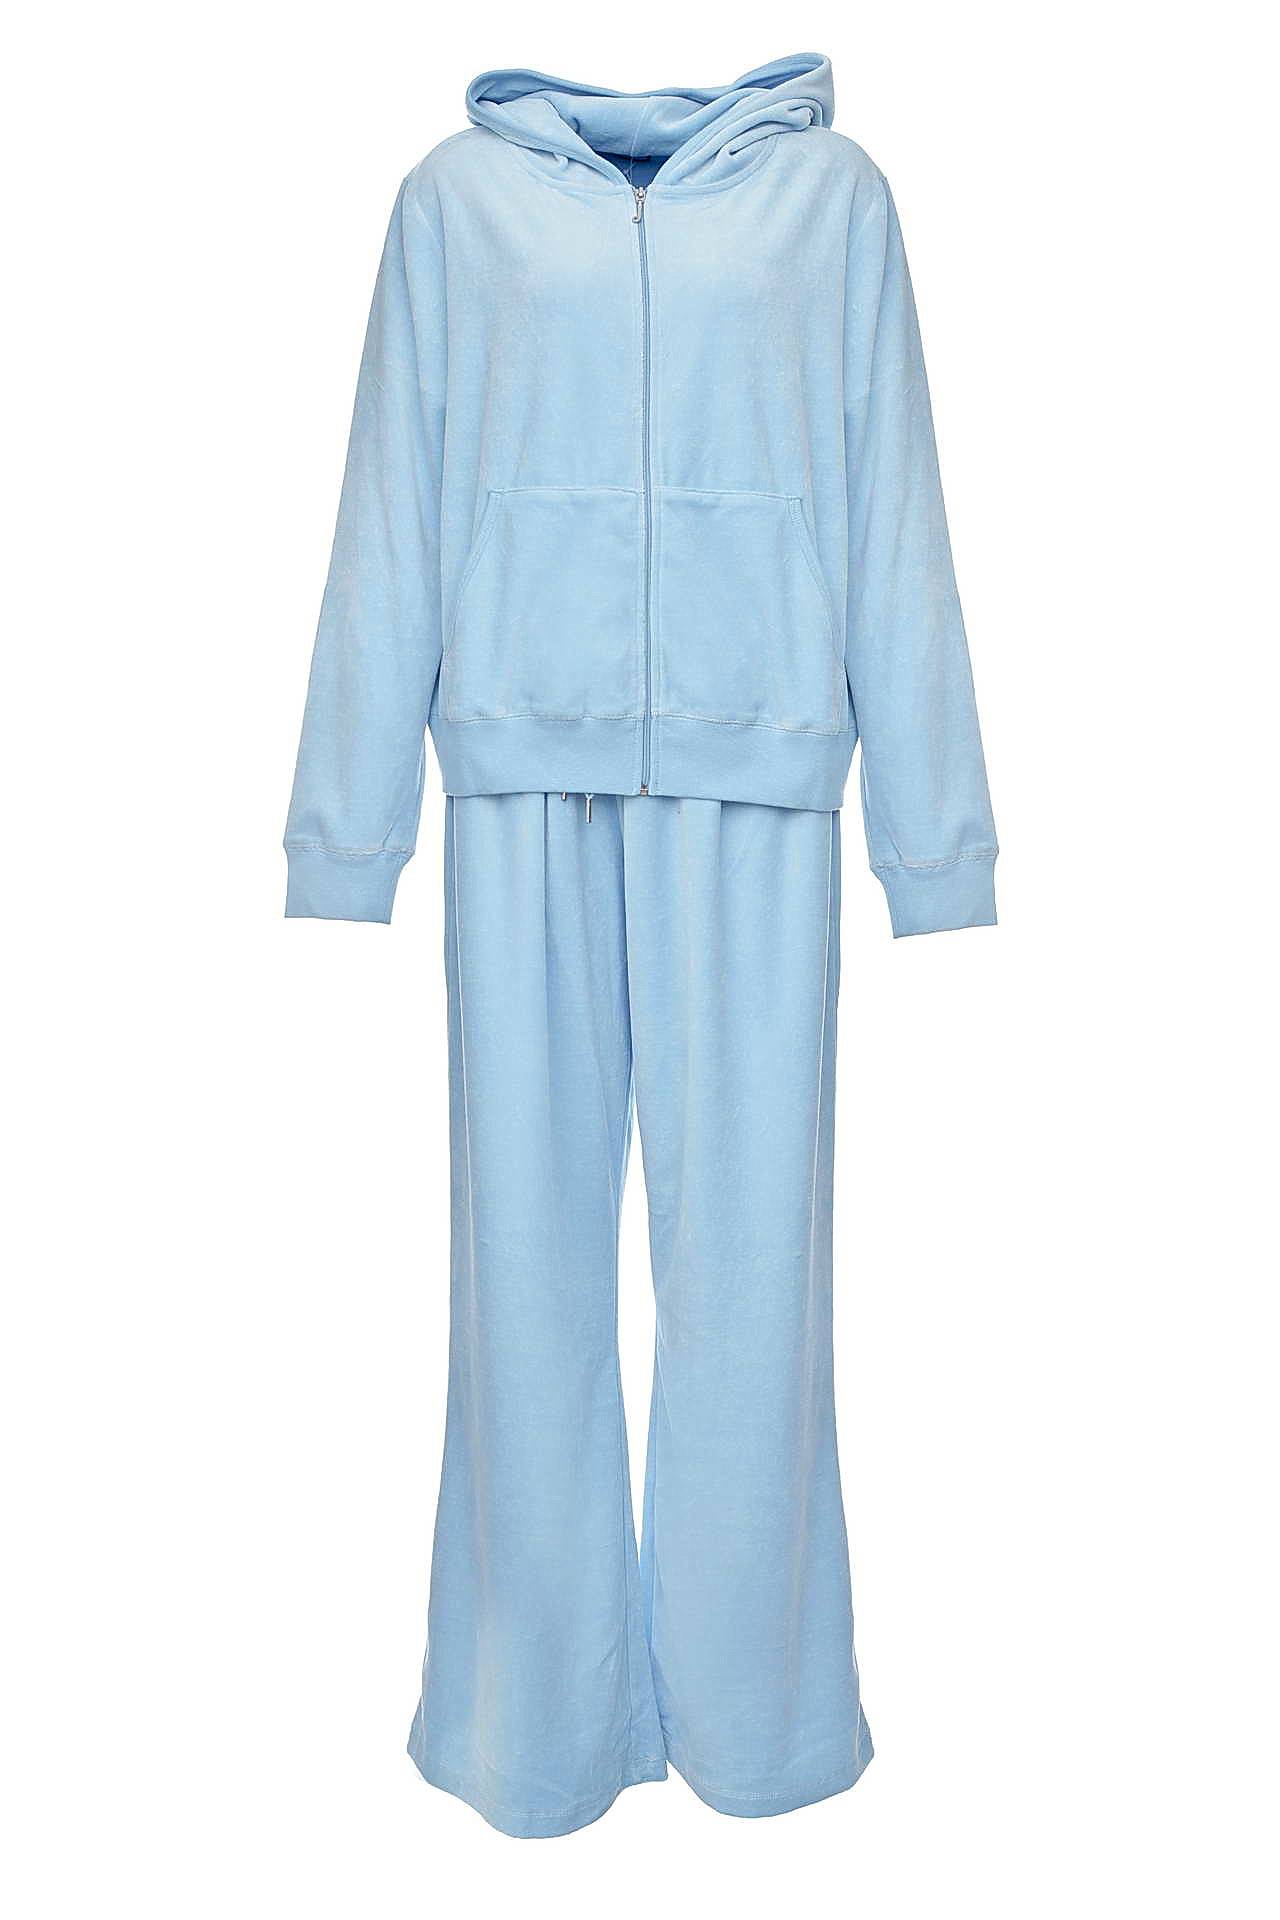 Одежда женская Костюм JUICY COUTURE (JGMU3088/3090/11.2). Купить за 12950 руб.